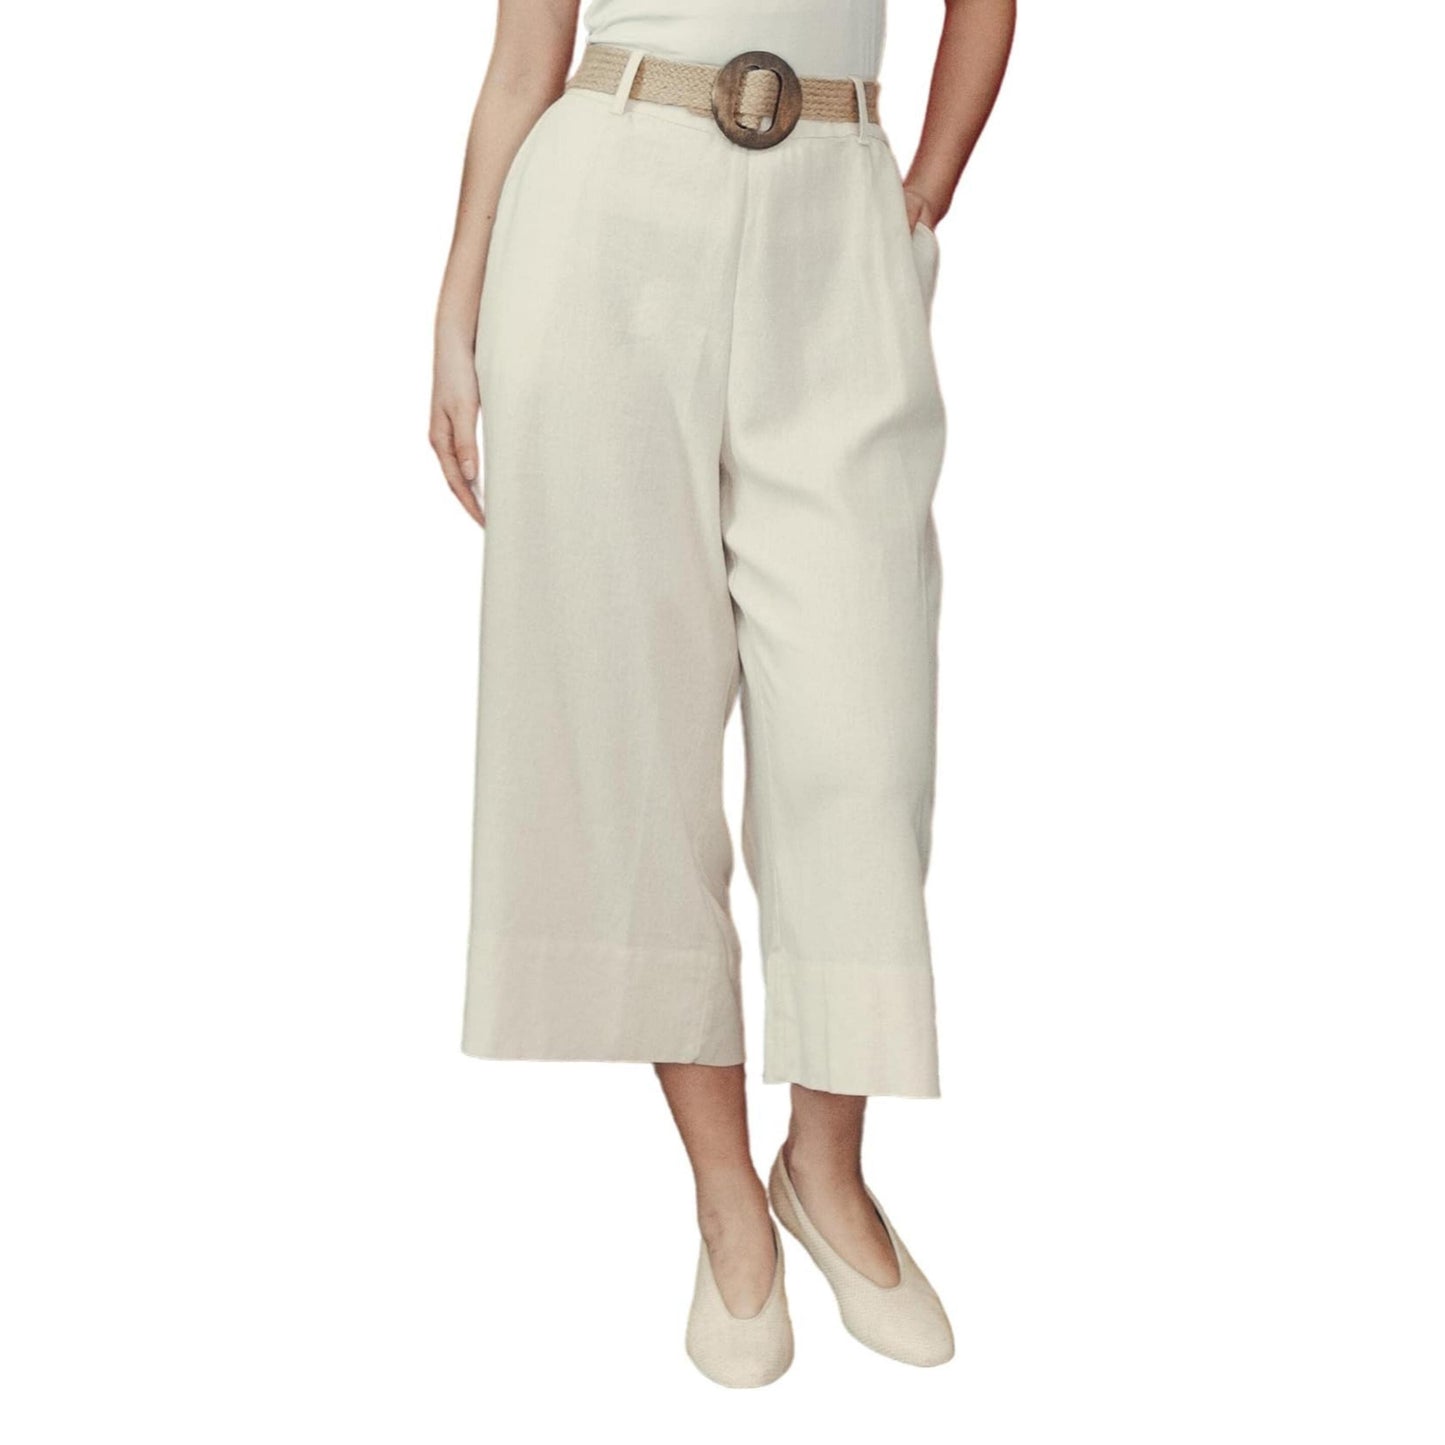 Linen Cropped Loose Fit Cotton Womens Capris Capri Pants Casual